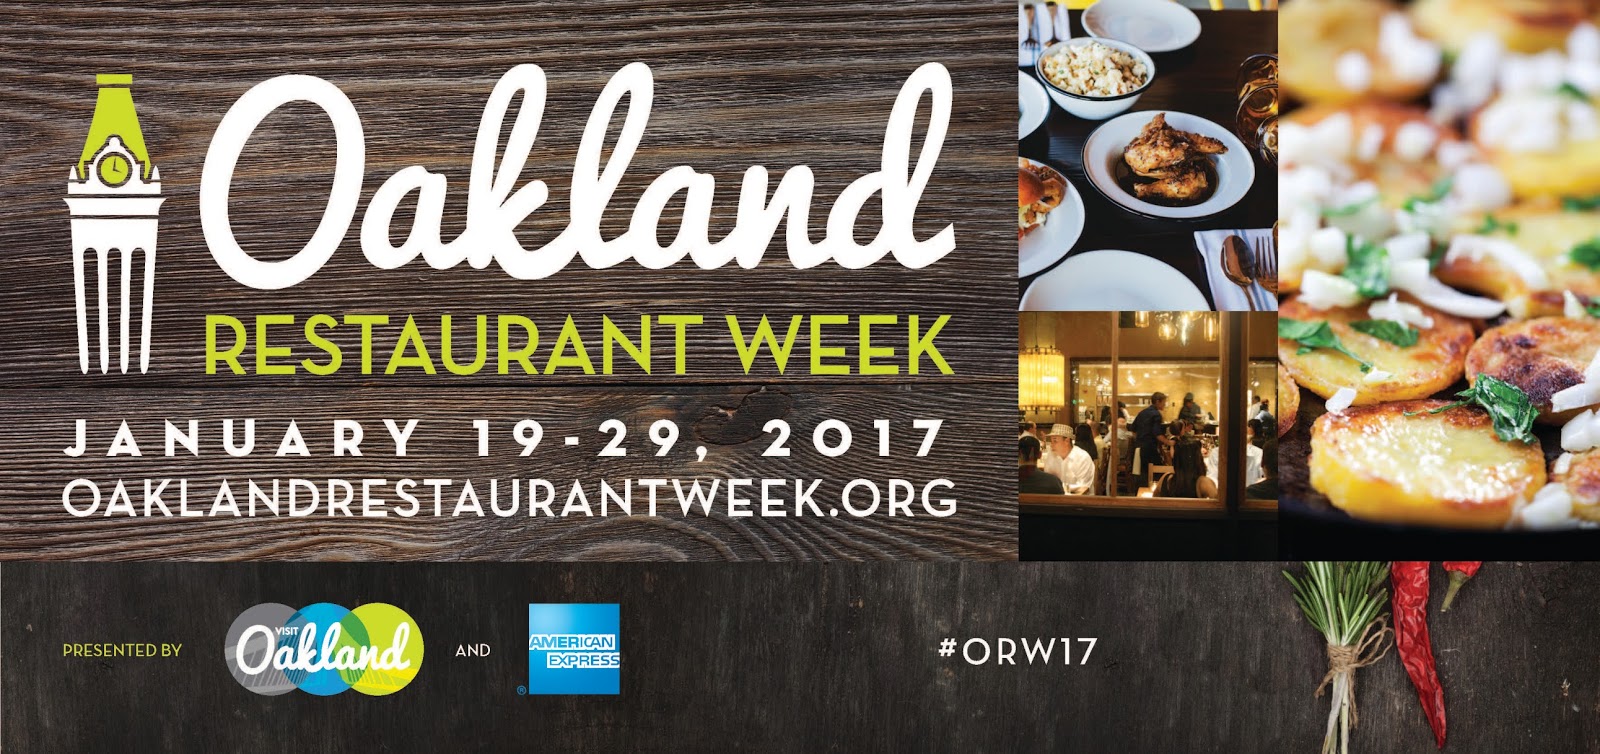 Our Oakland Oakland Restaurant Week